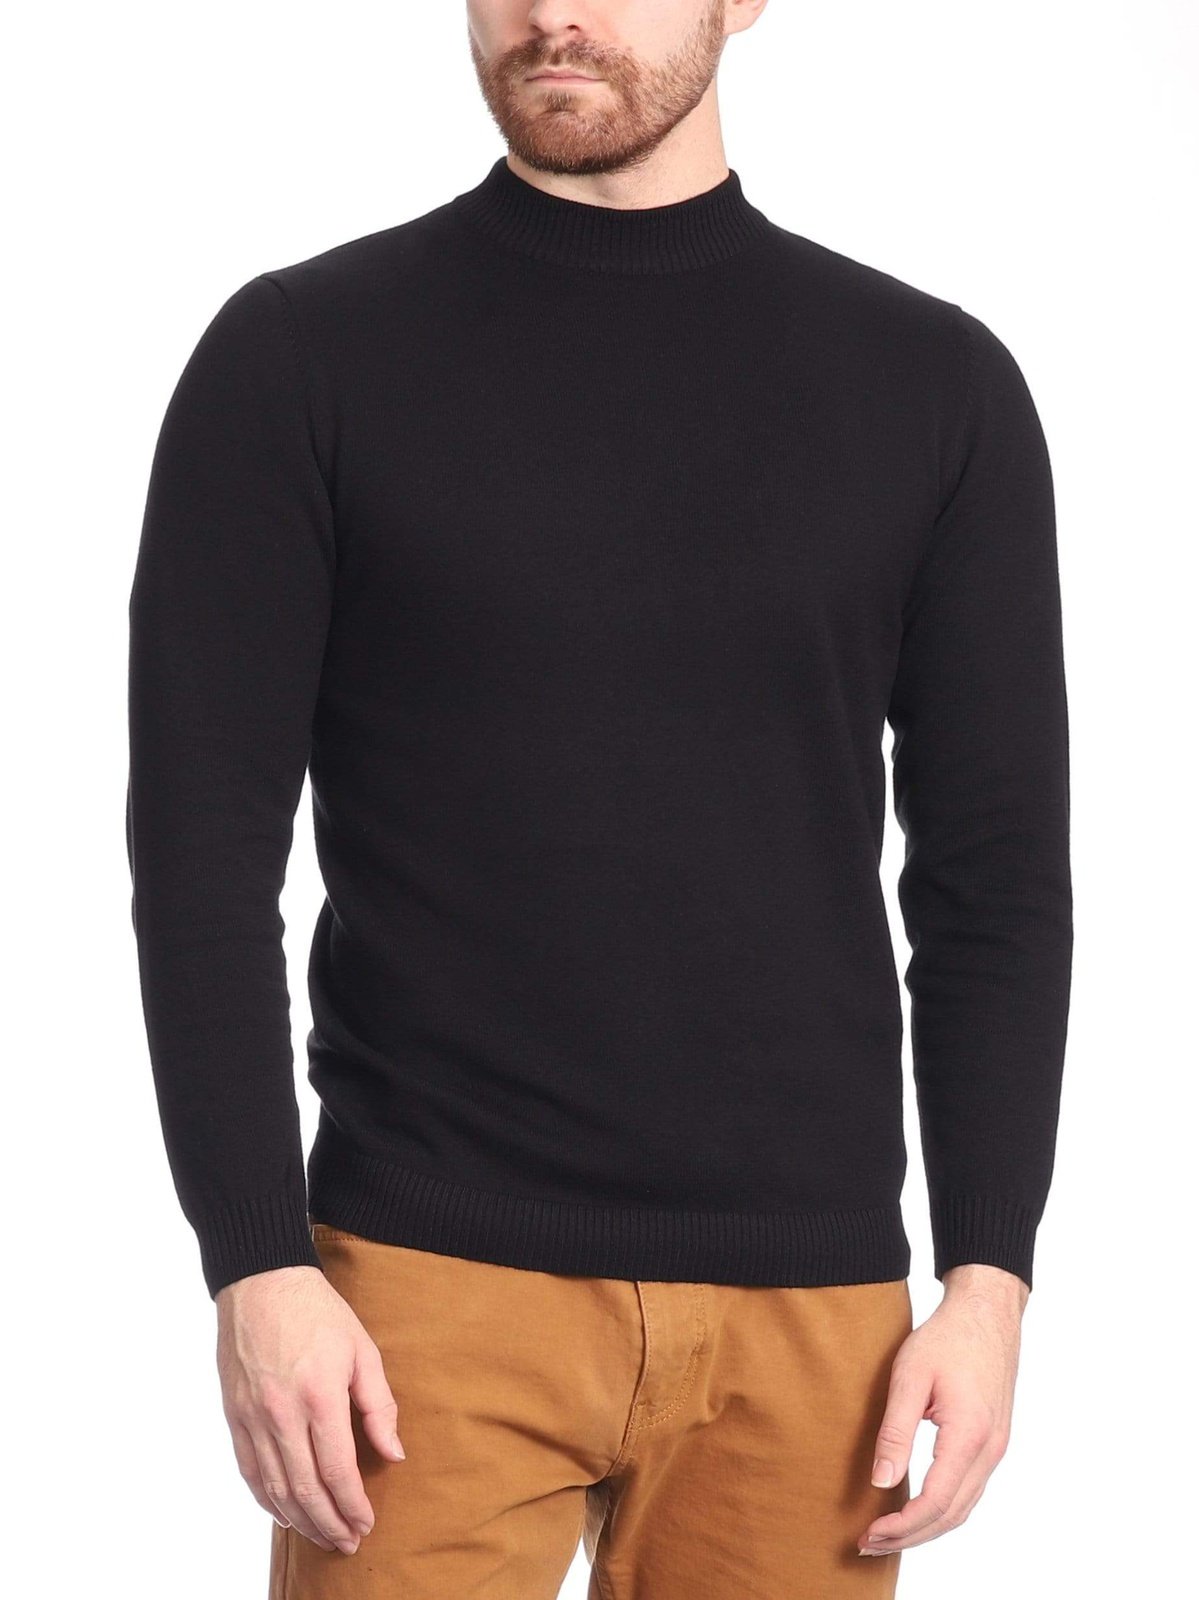 Arthur Black Default Category Migrated Arthur Black Men&#39;s Solid Black Pullover Cotton Blend Mock Neck Sweater Shirt